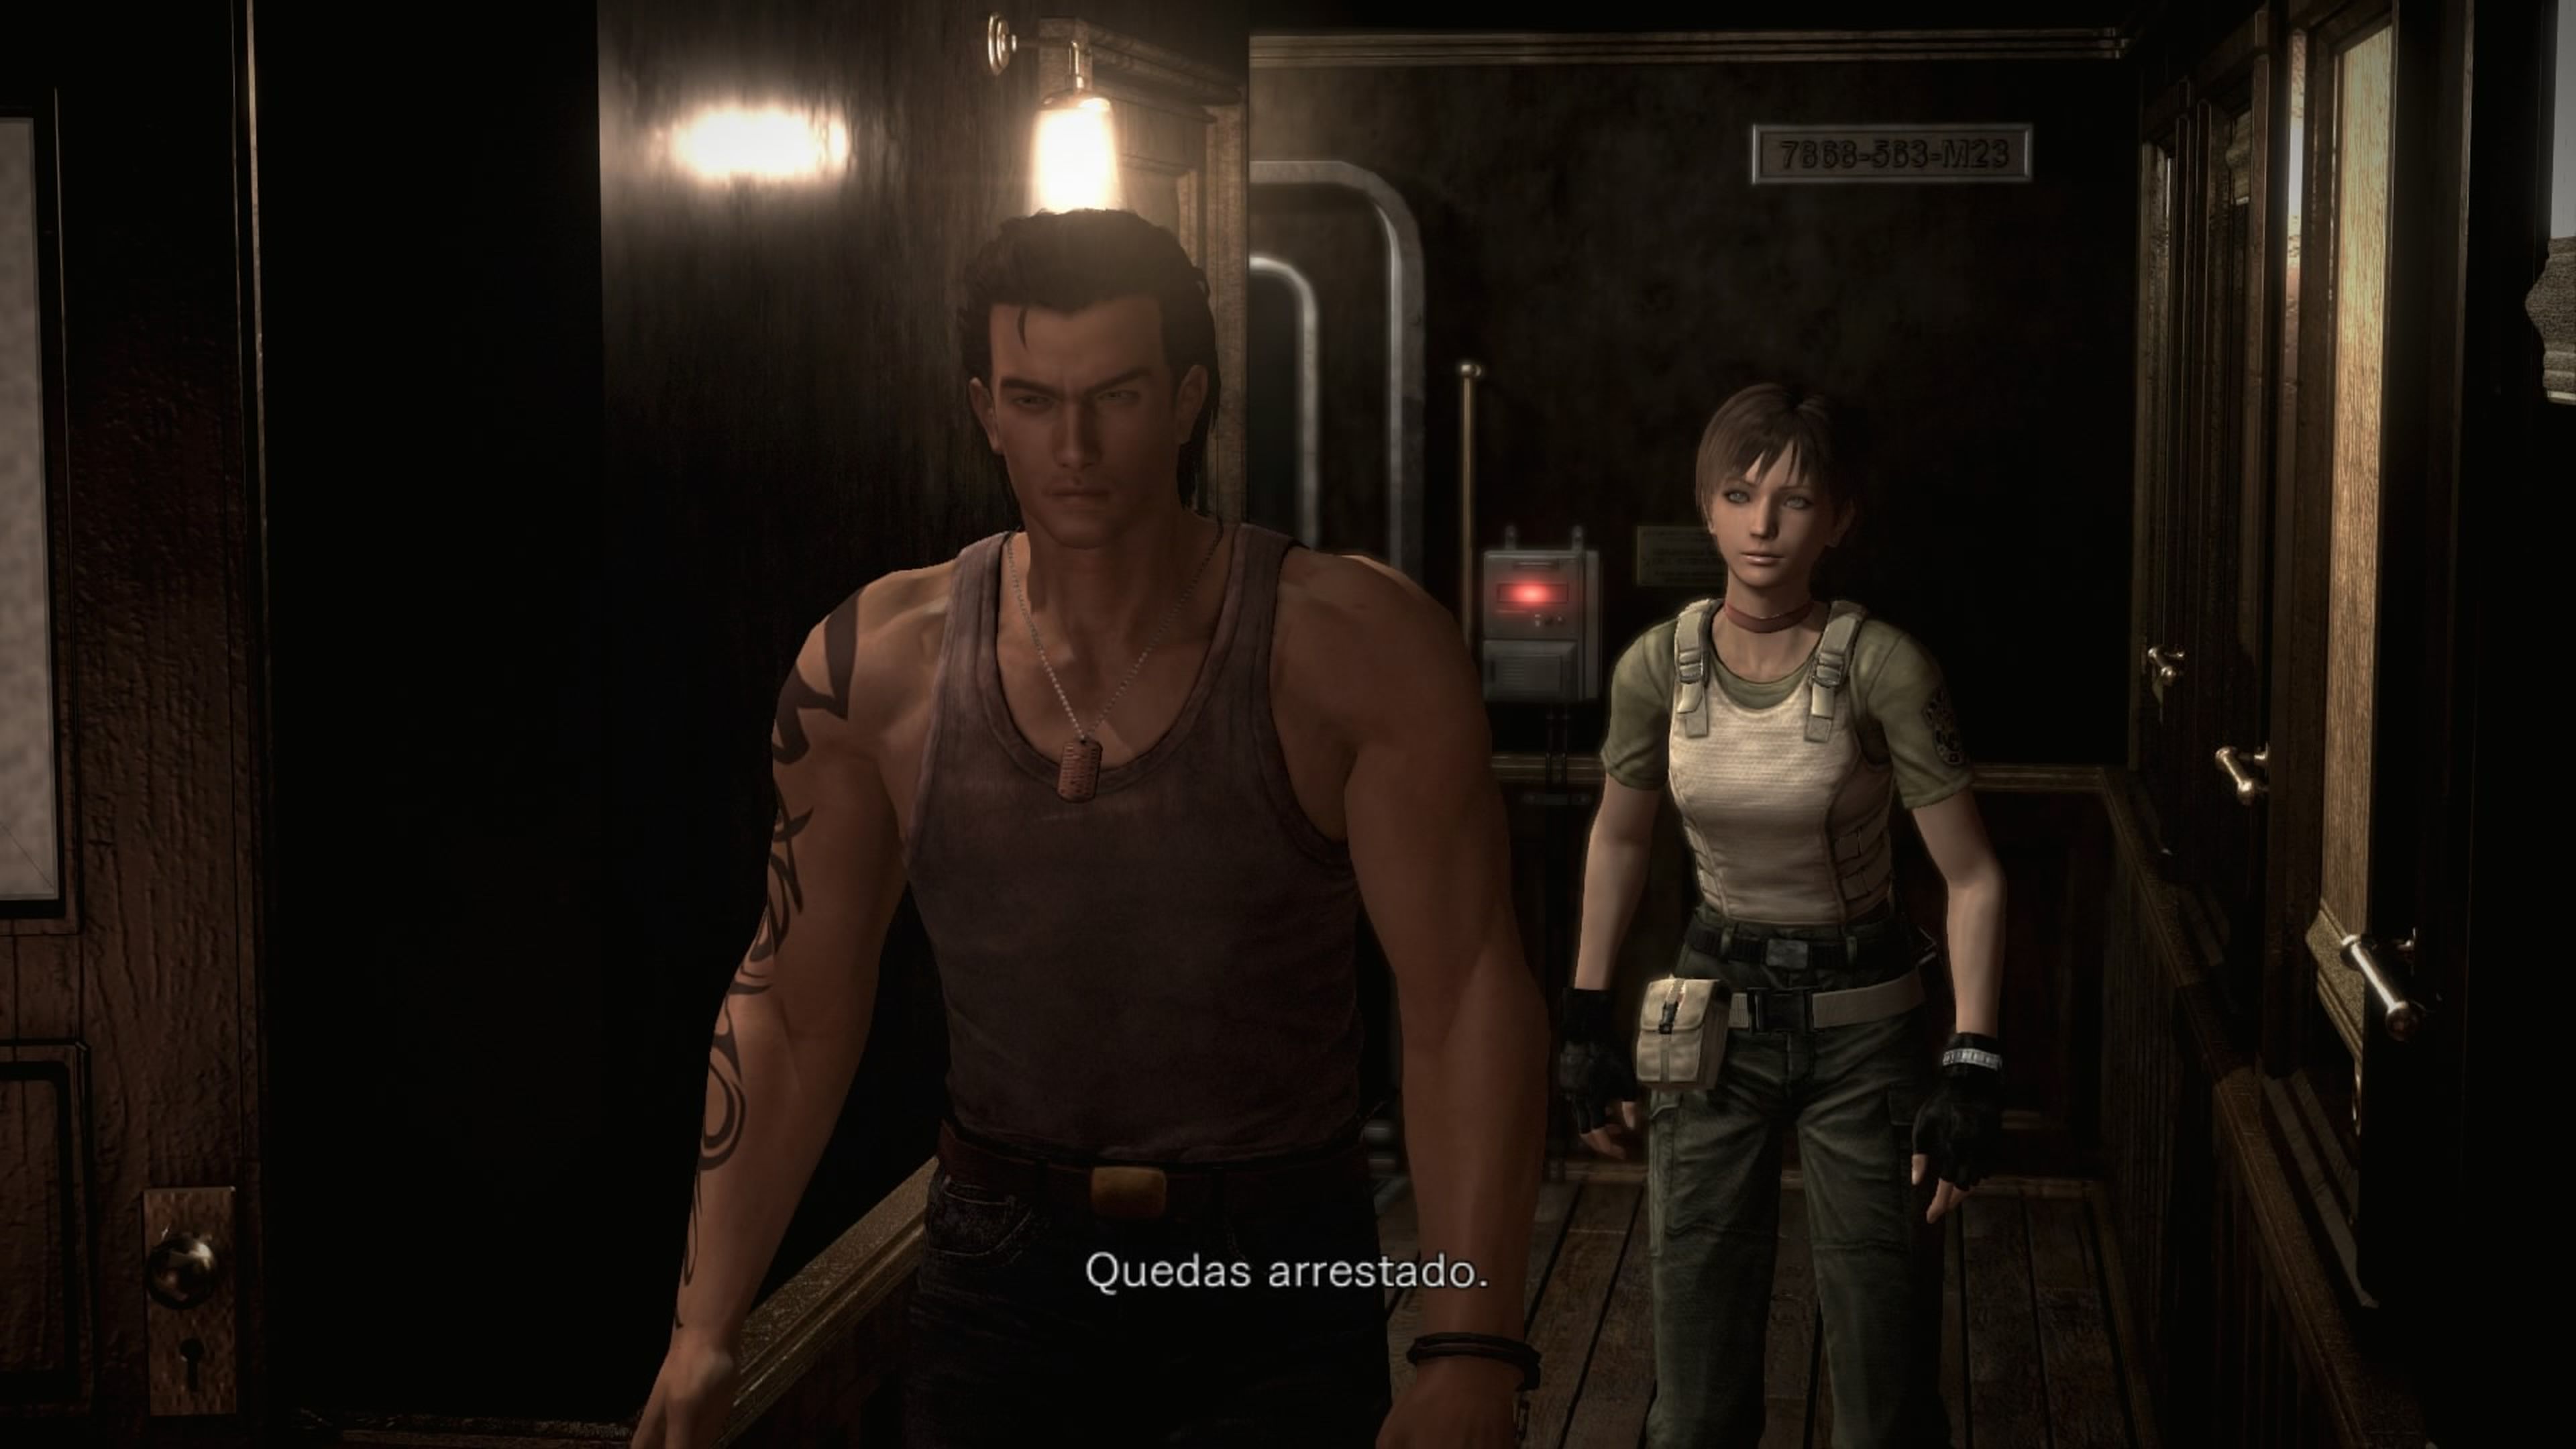 Avance de Resident Evil 0 HD Remaster